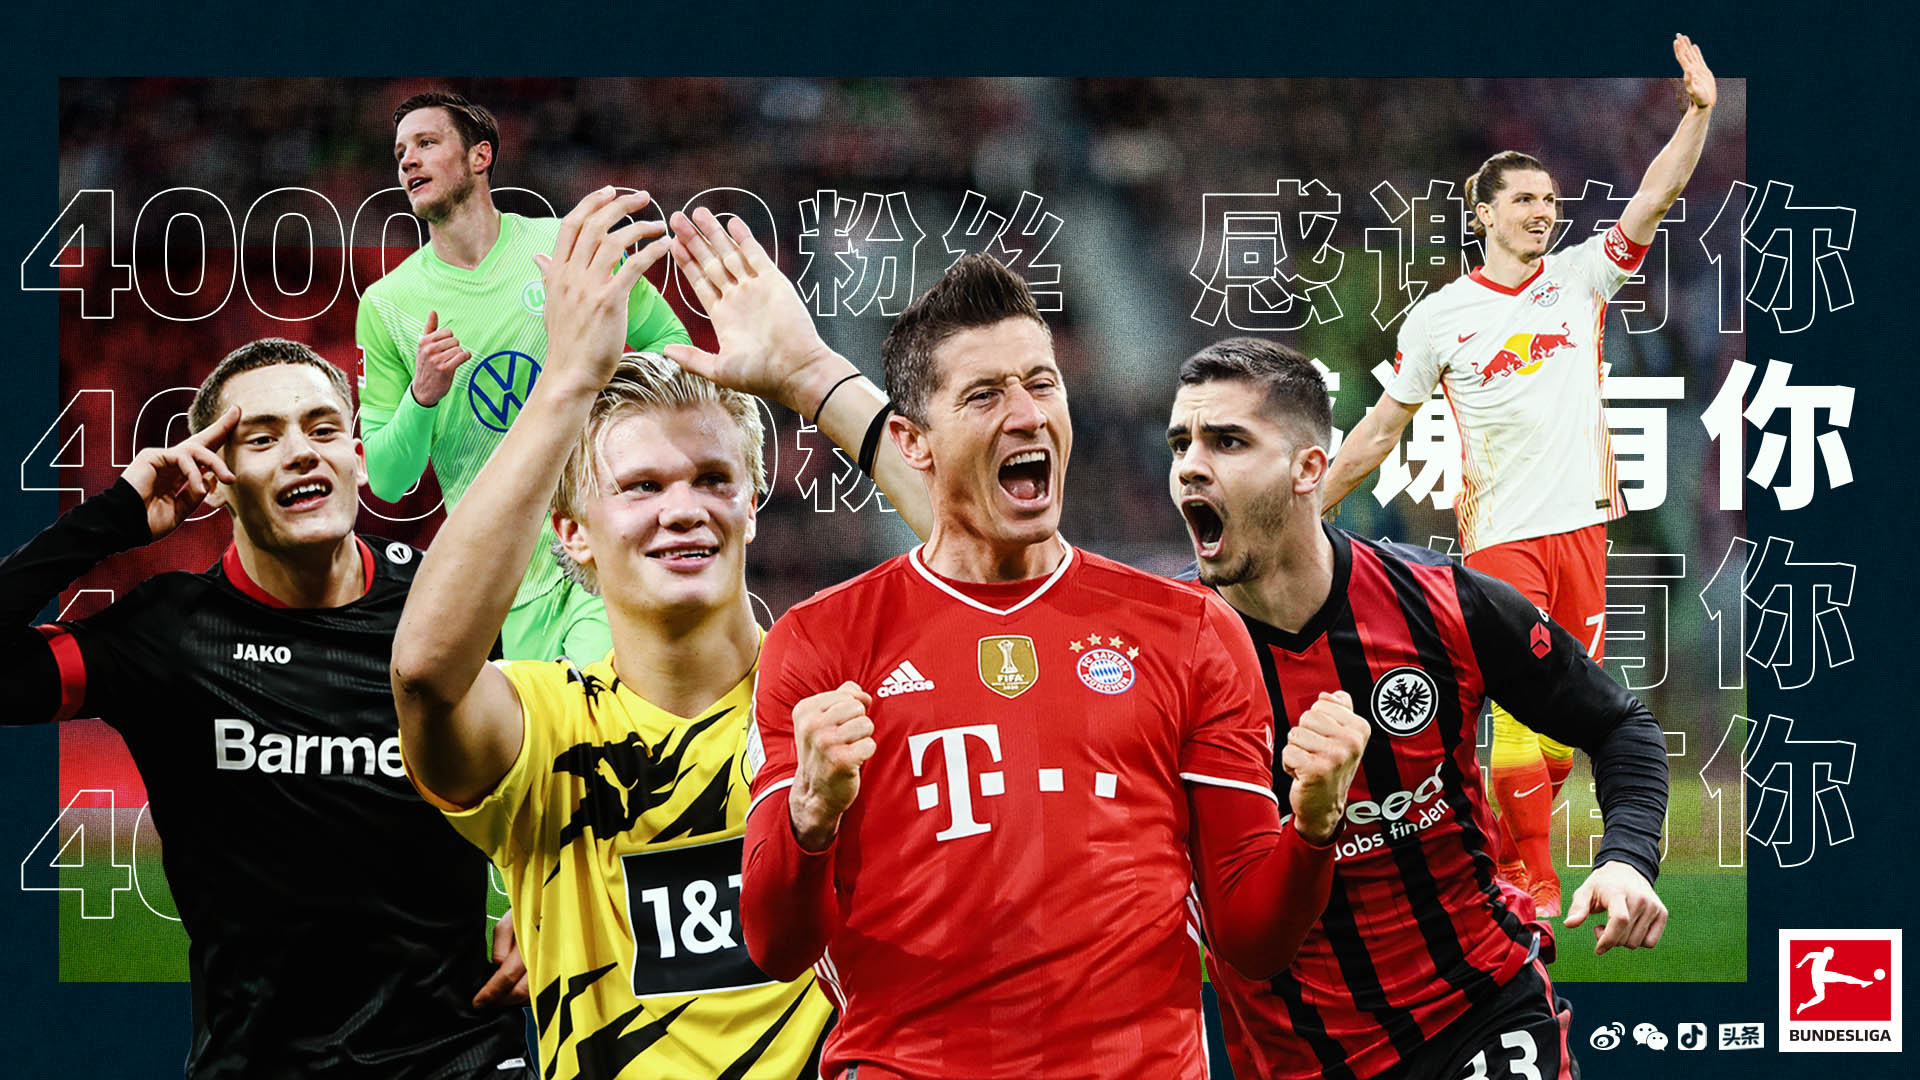 国际足球 | 2017-2018赛季德甲冠军-拜仁慕尼黑 | Rins99.com︱原创足球壁纸设计